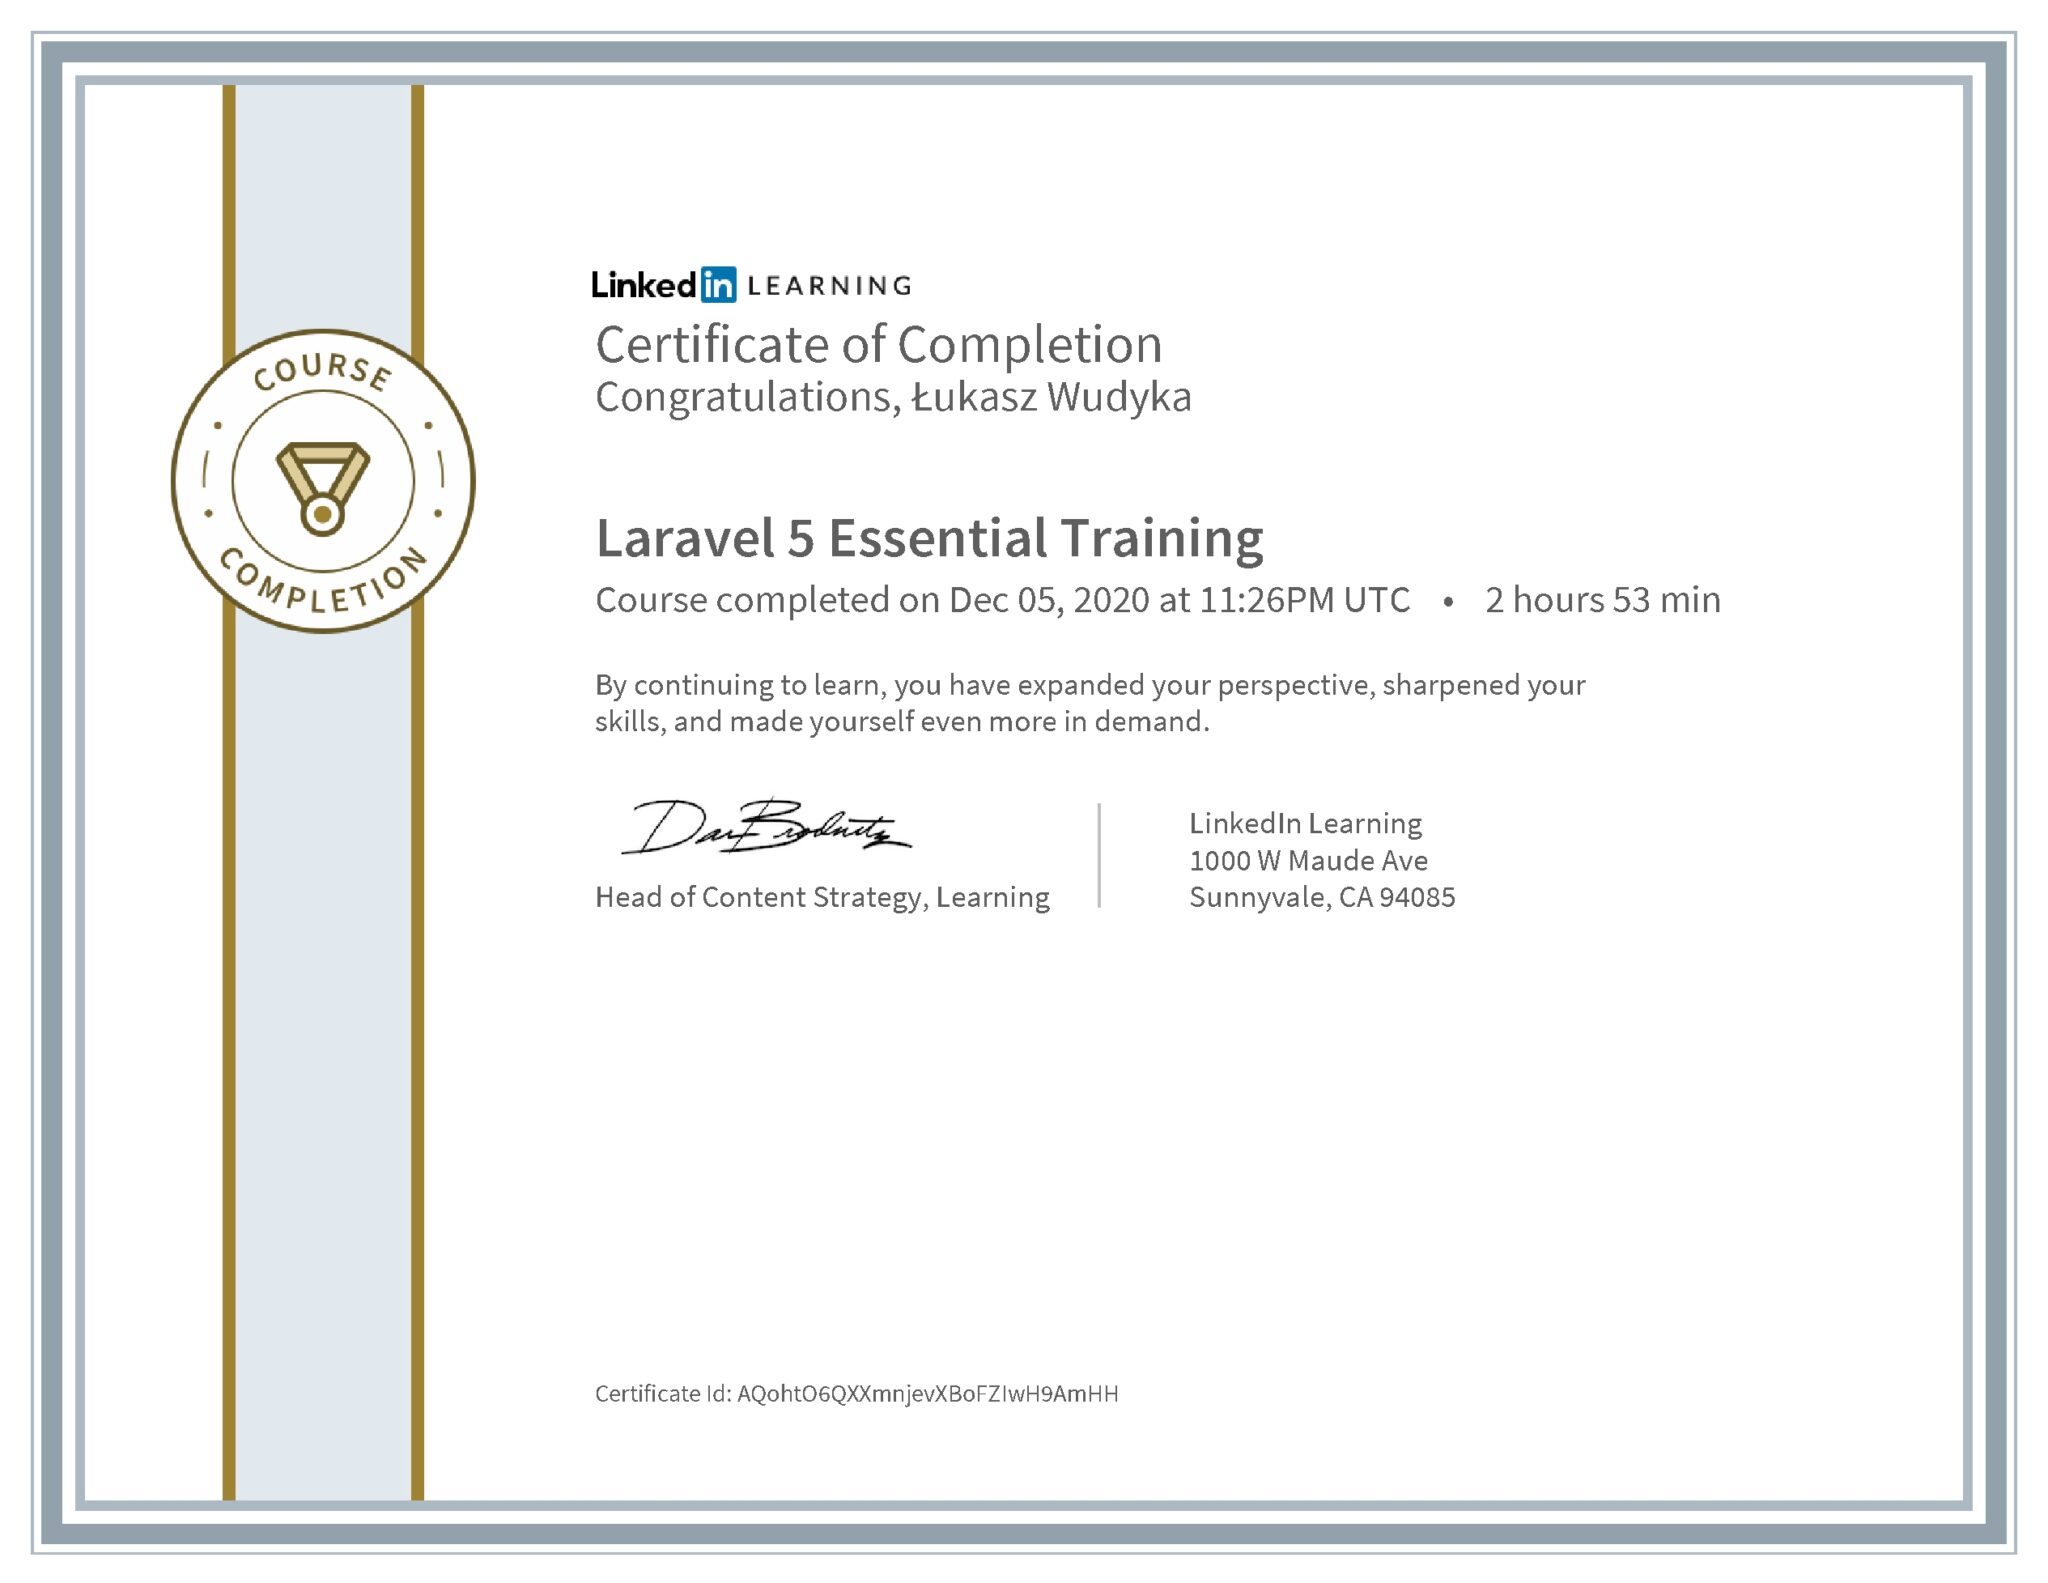 Łukasz Wudyka certyfikat LinkedIn Laravel 5 Essential Training